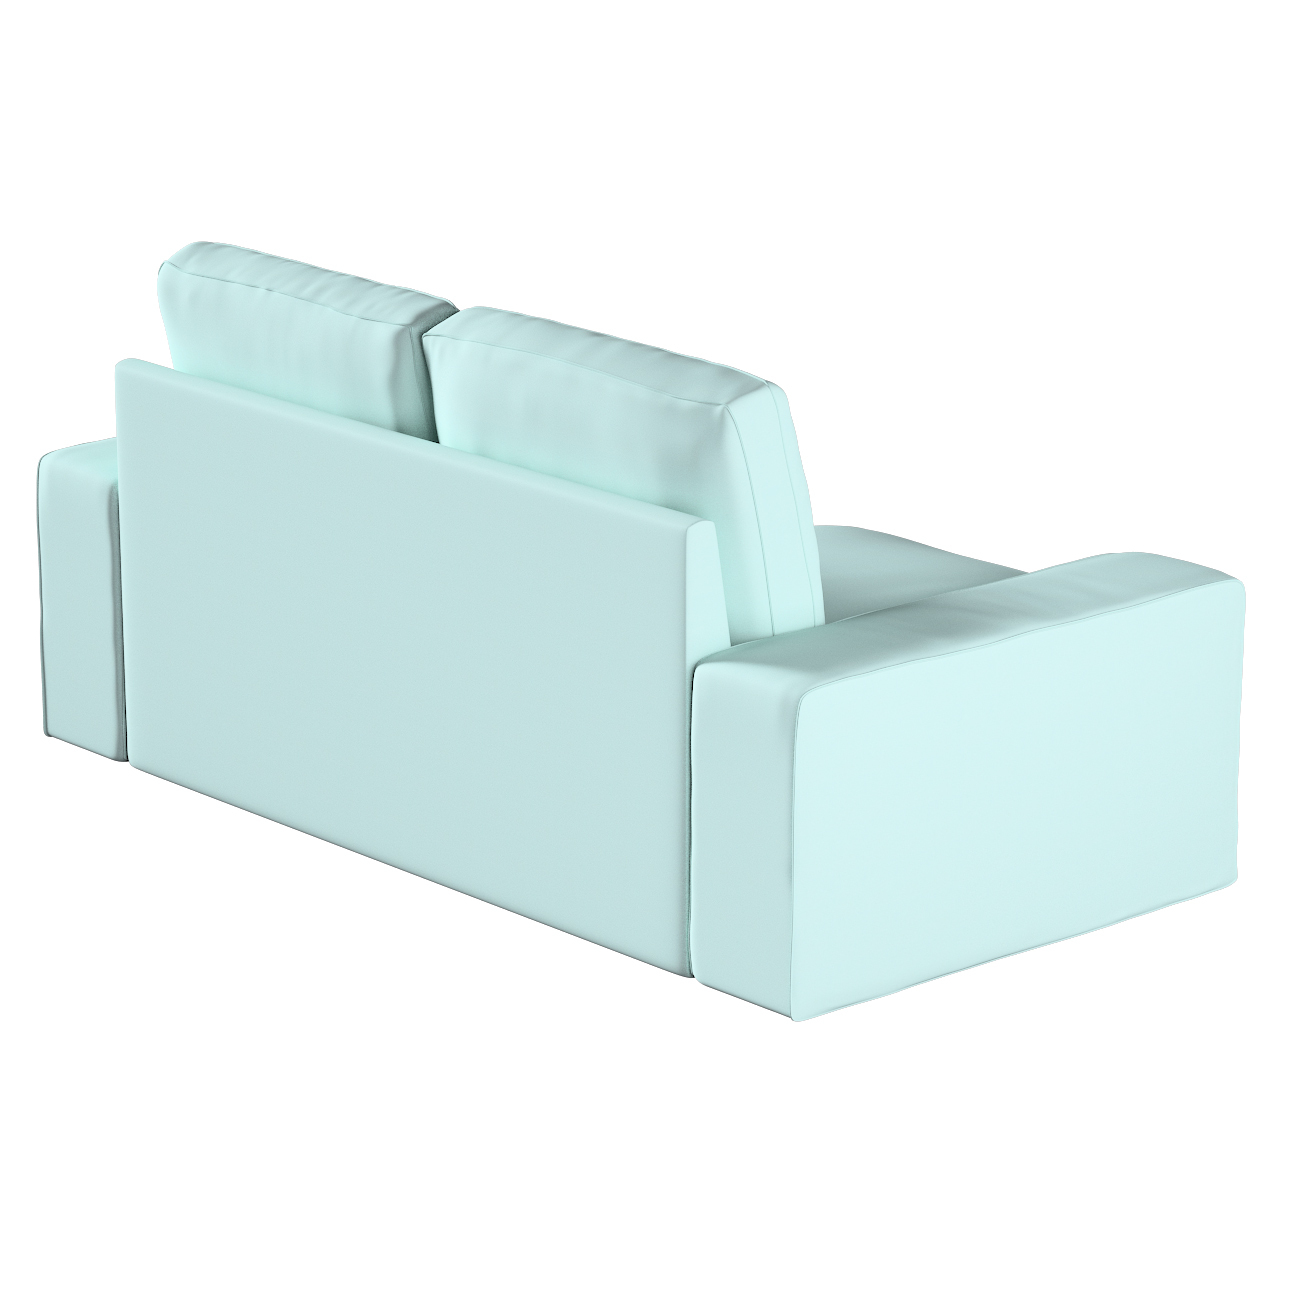 Bezug für Kivik 2-Sitzer Sofa, hellblau, Bezug für Sofa Kivik 2-Sitzer, Cot günstig online kaufen